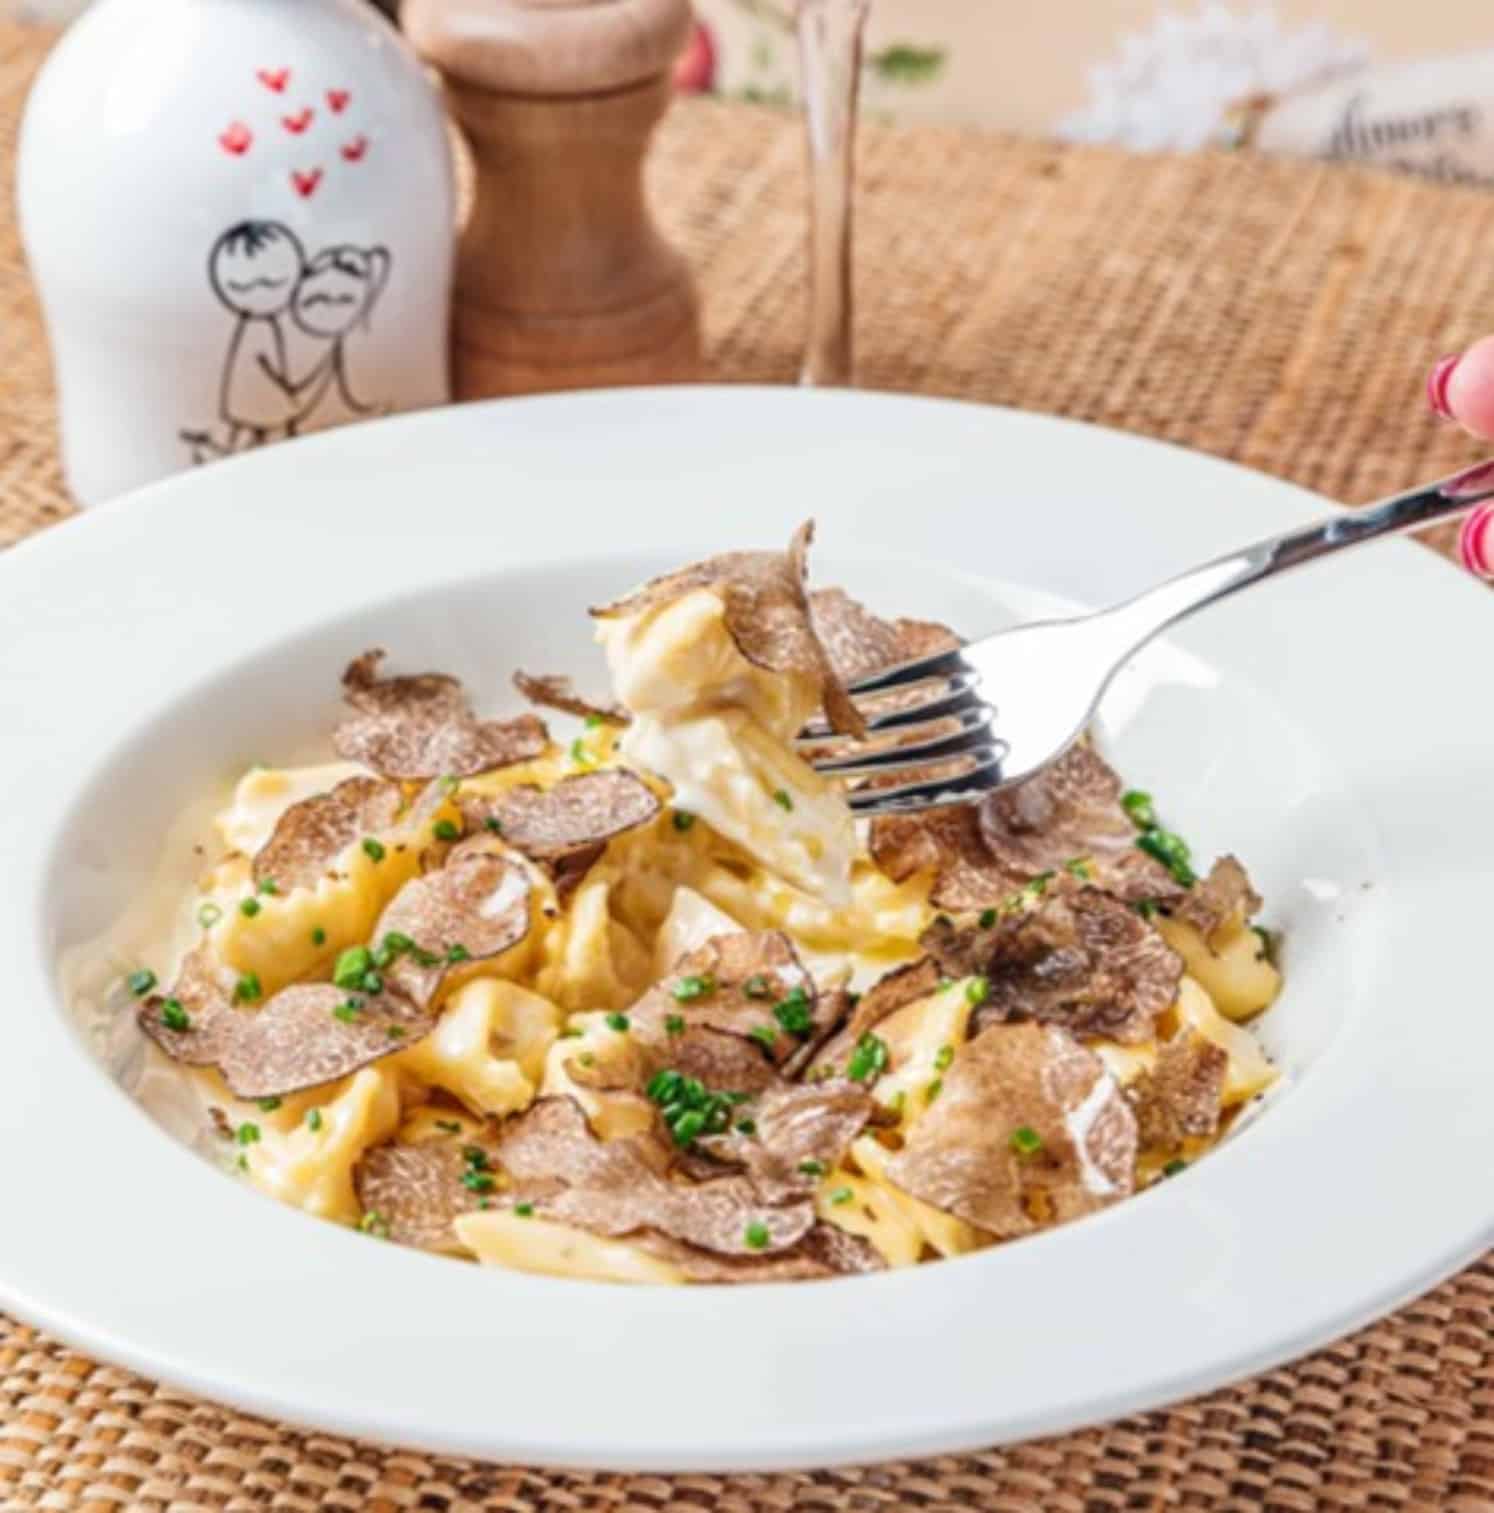 Découvrez pour vos repas d'affaires en Haute-Savoie, Restaurant Amore Hibou. Au cœur de Megève, une cuisine 100% italienne.